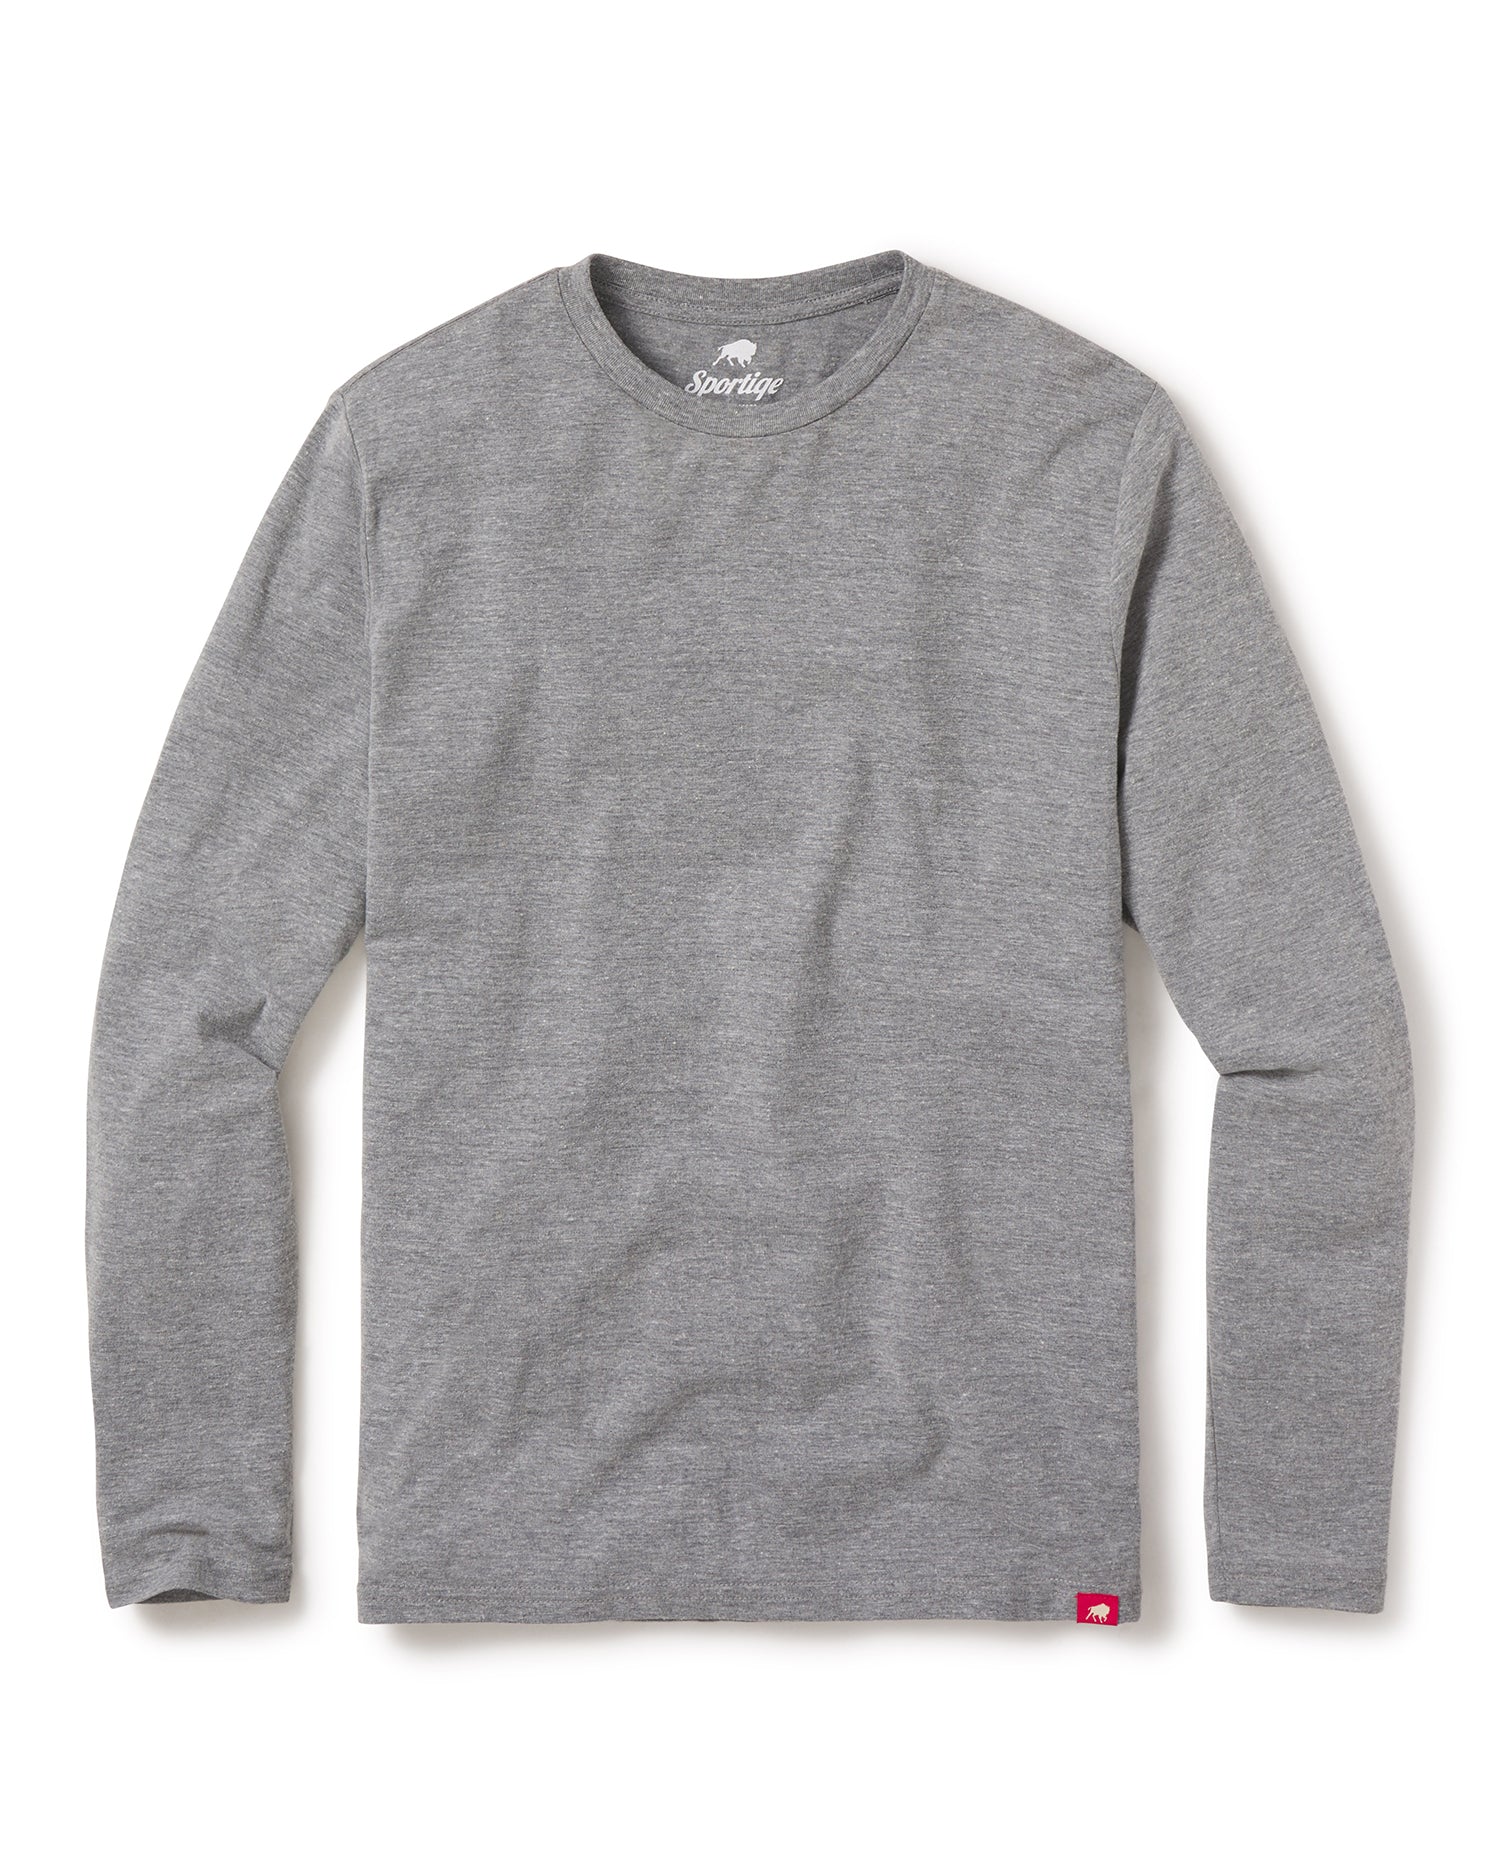 Sportiqe Men's Long Sleeve  Comfy T-Shirt - Soft Jersey Knit - Sportiqe Apparel 